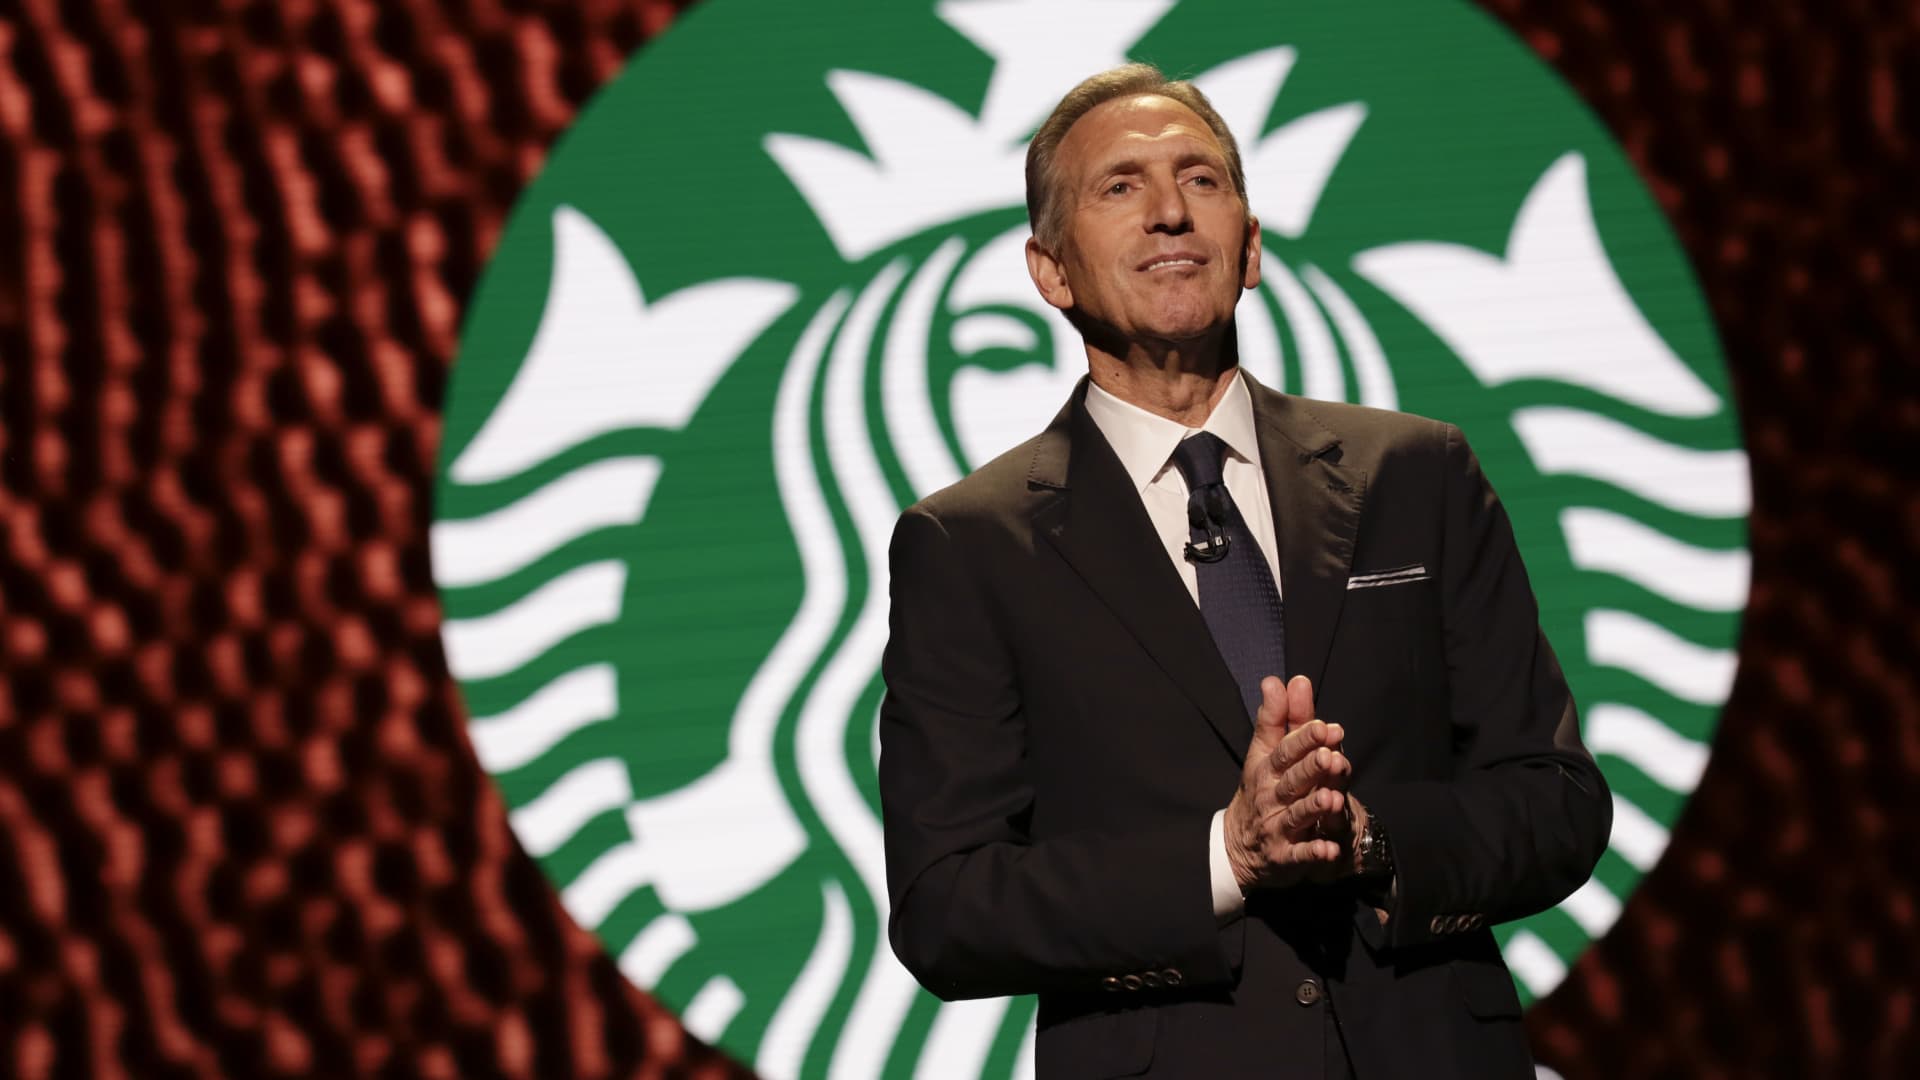 Starbucks union files NLRB complaint citing CEO Schultz’s benefits comments